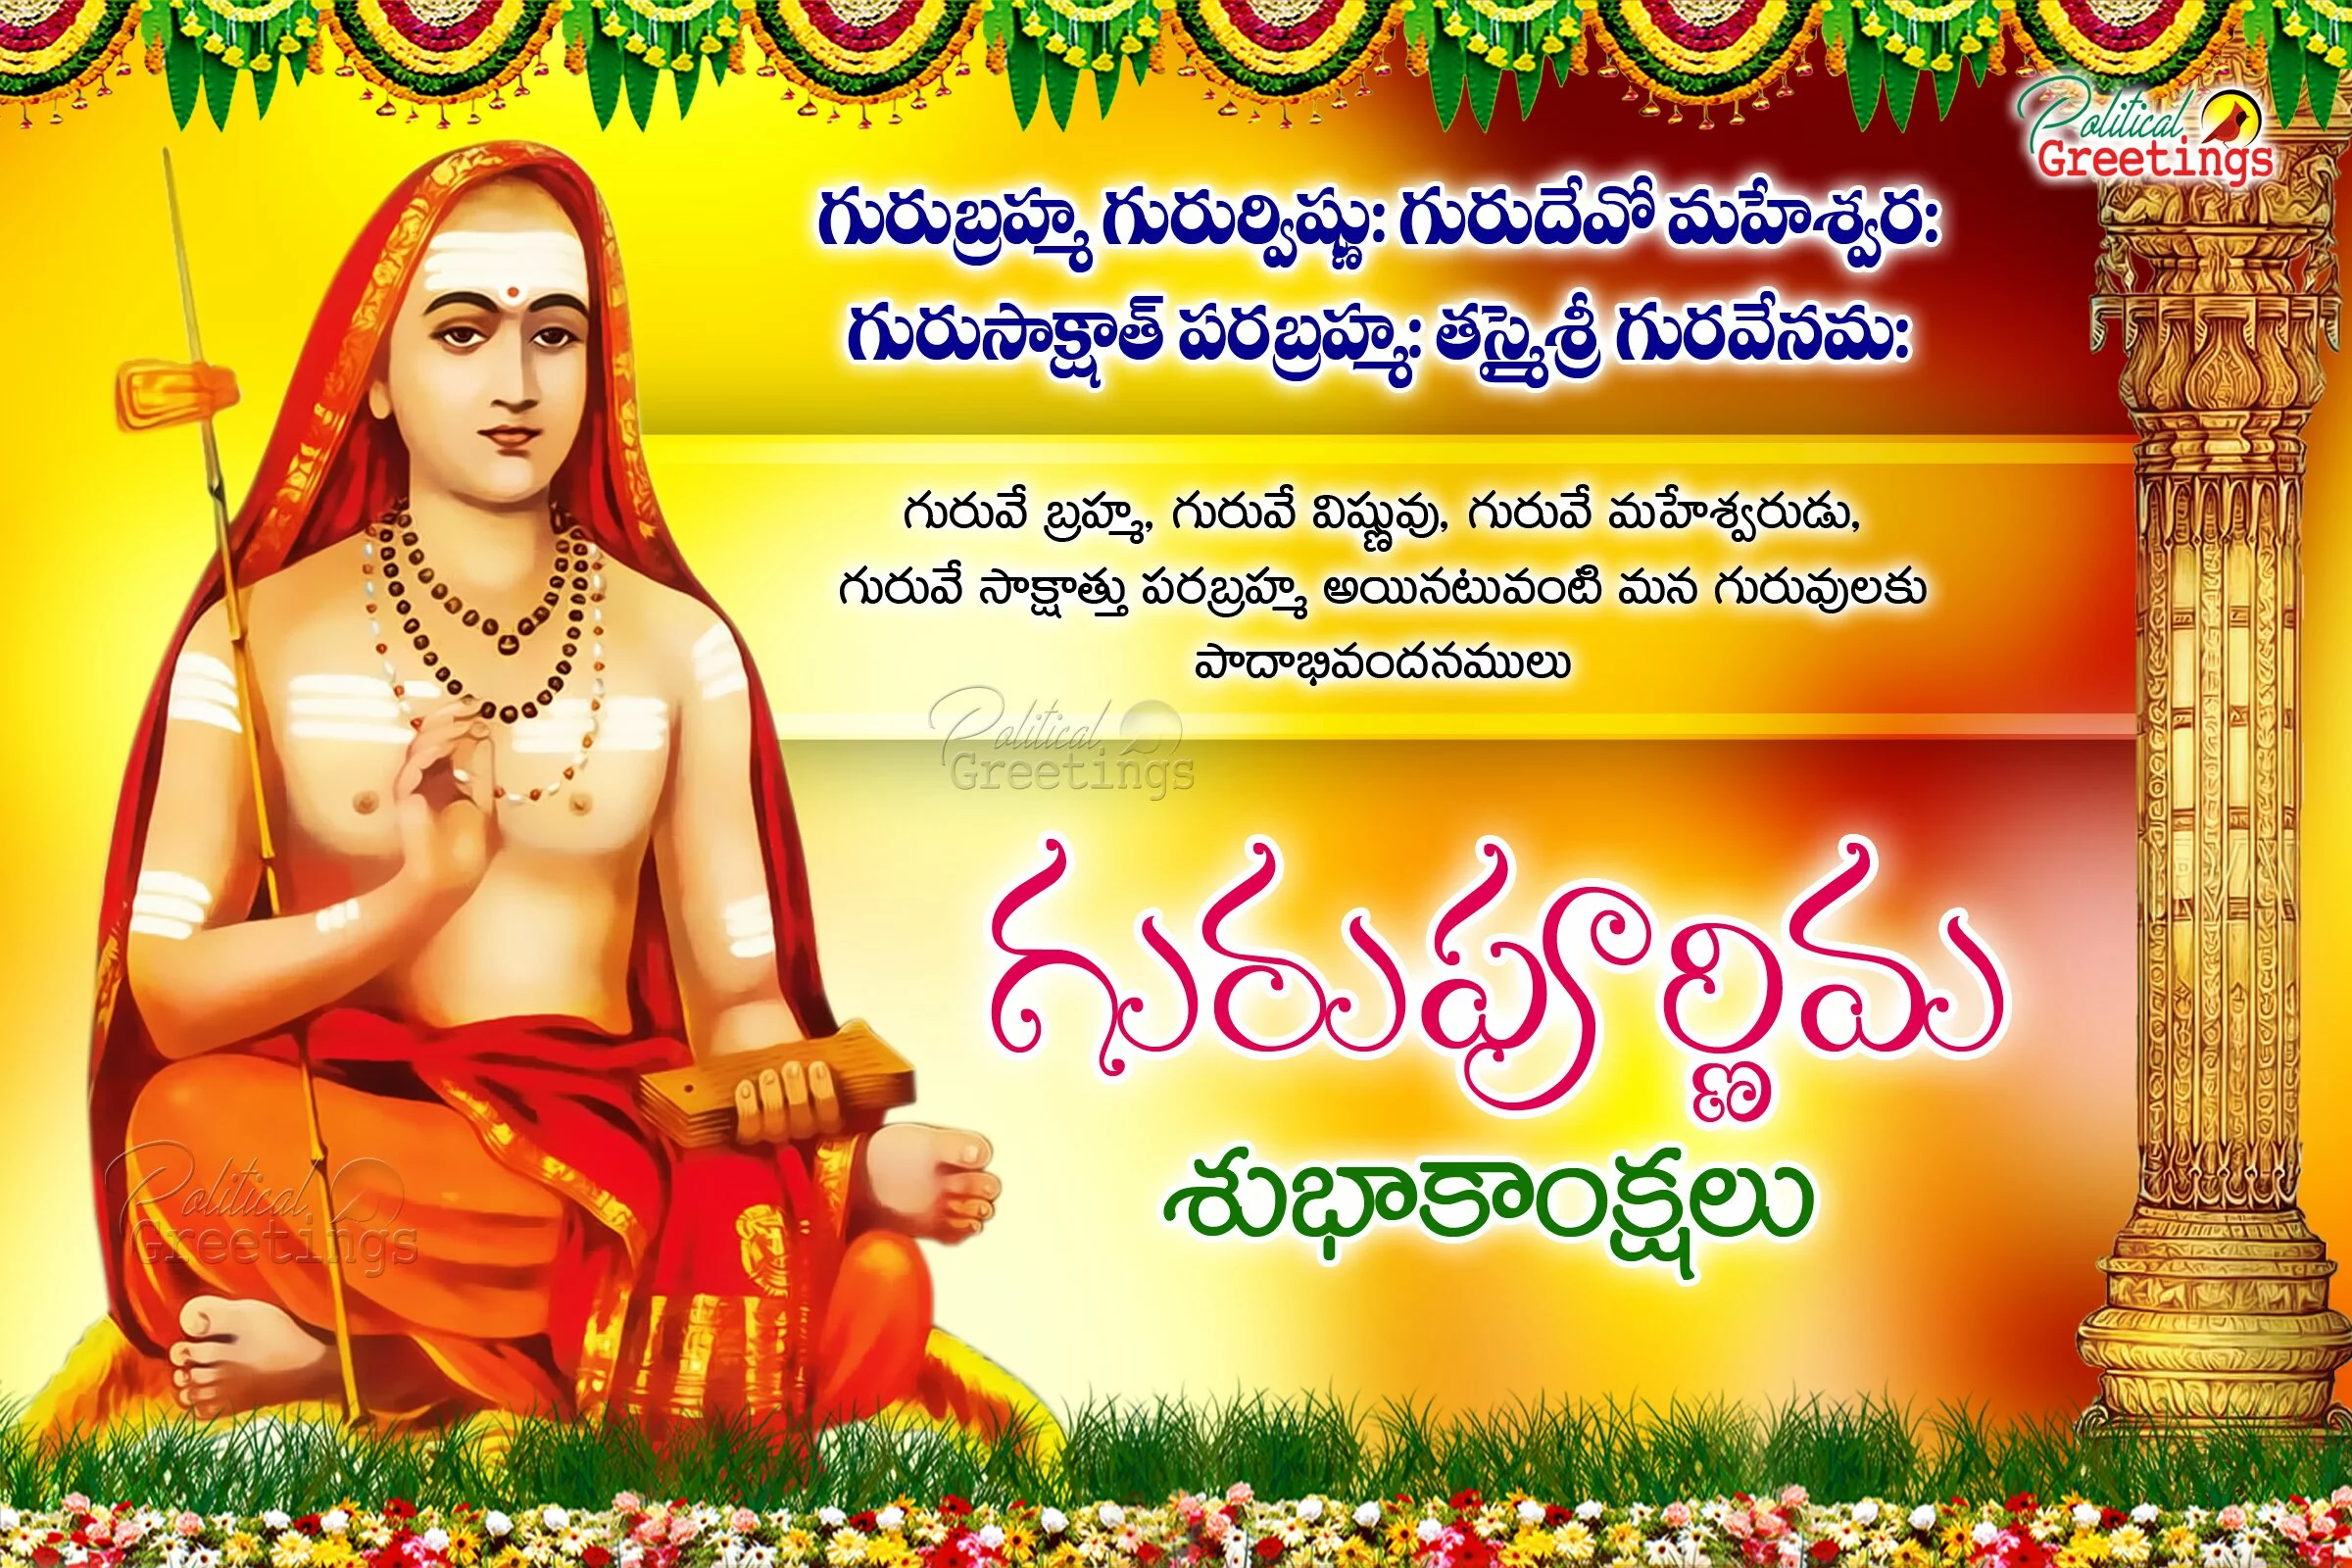 Telugu GuruPurnima Quotations Greetings Wishes with Adishankaracharya Hd wallpapers